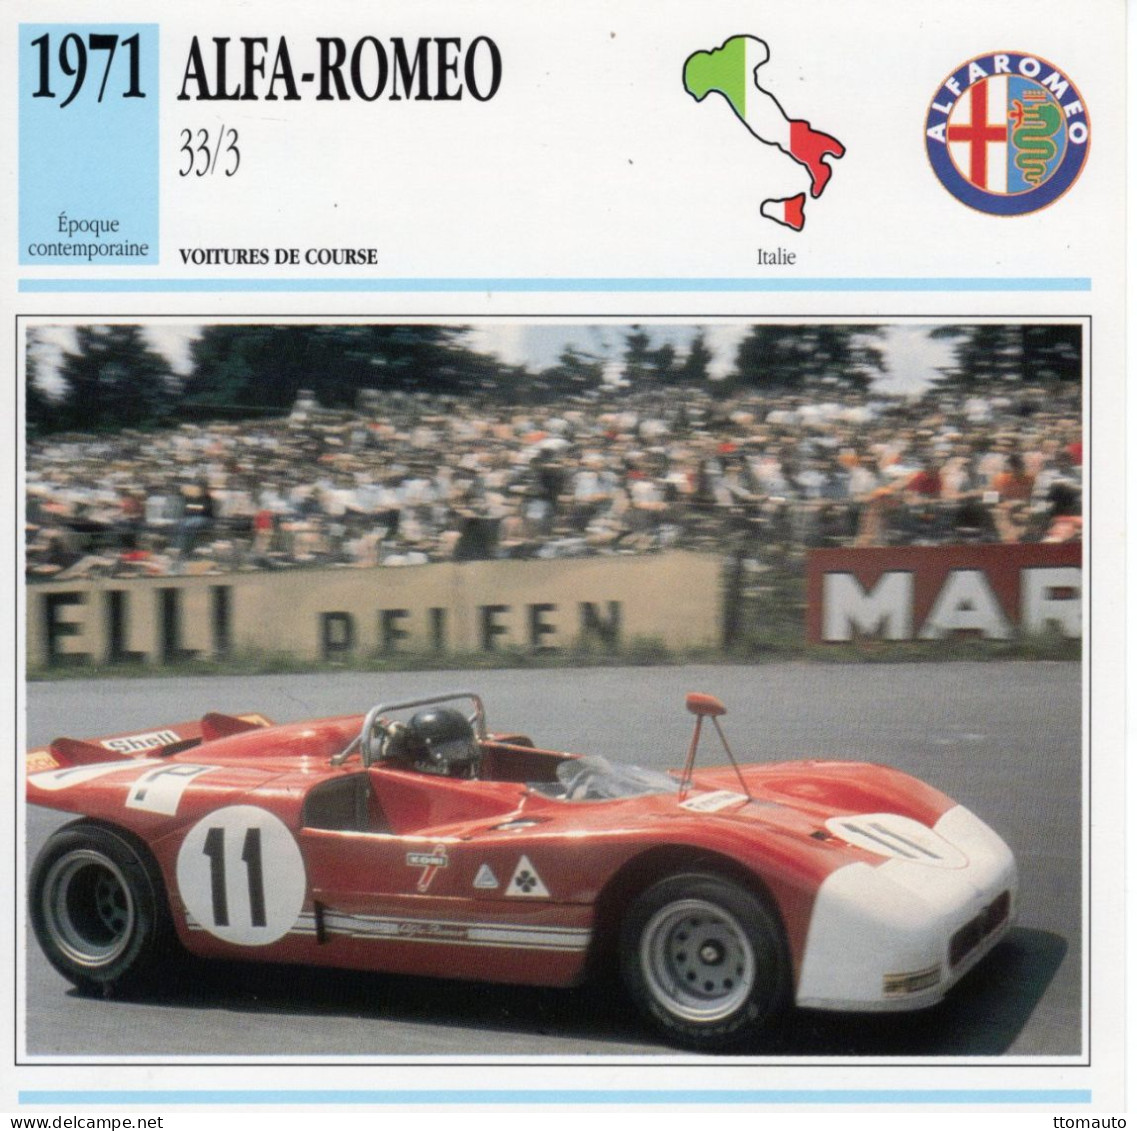 Alfa Romeo 33/3  -  1971  - Voiture De Course -  Fiche Technique Automobile (I) - Automobili